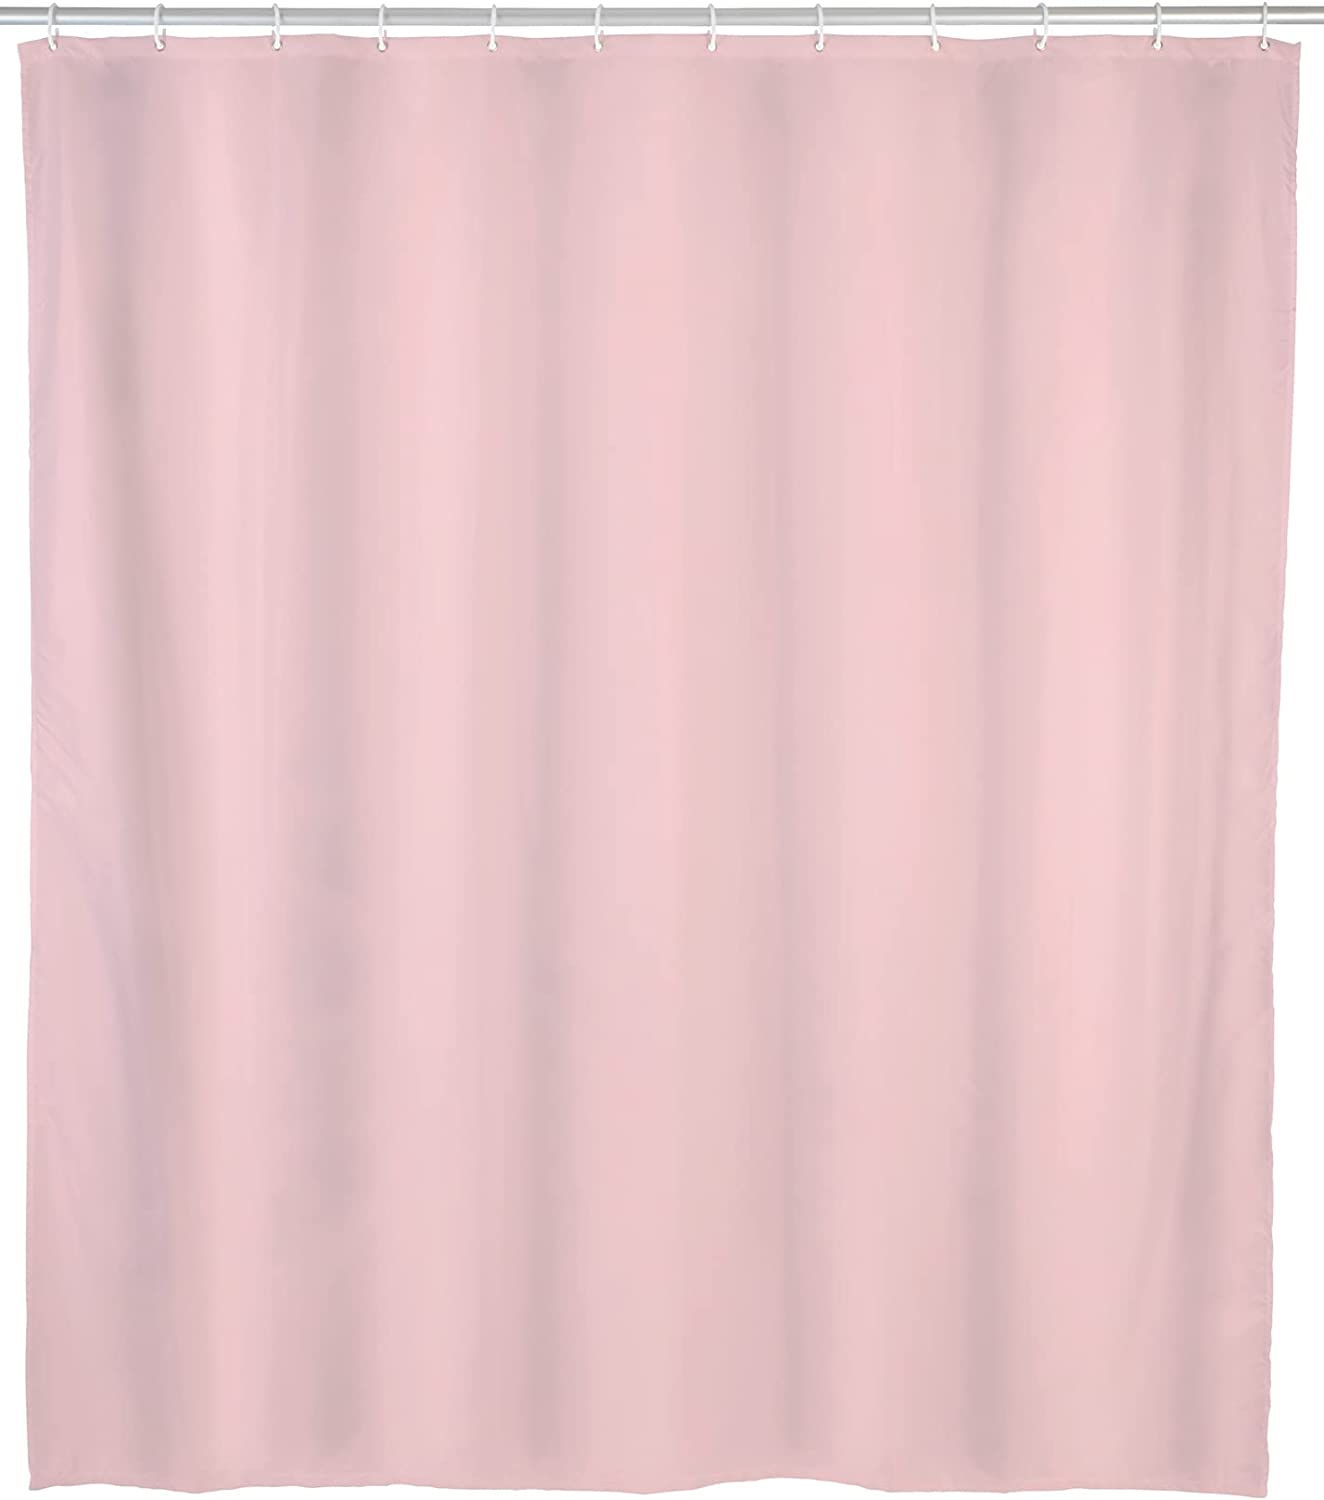 Duschvorhang Zen, Vorhang aus pflegeleichtem, umweltfreundlichem und recyclingfähigem Kunststofffilm, wasserabweisend, verstärkte Lochleiste mit rostfreien Metall-Ösen, 120 x 200 cm, Rosa